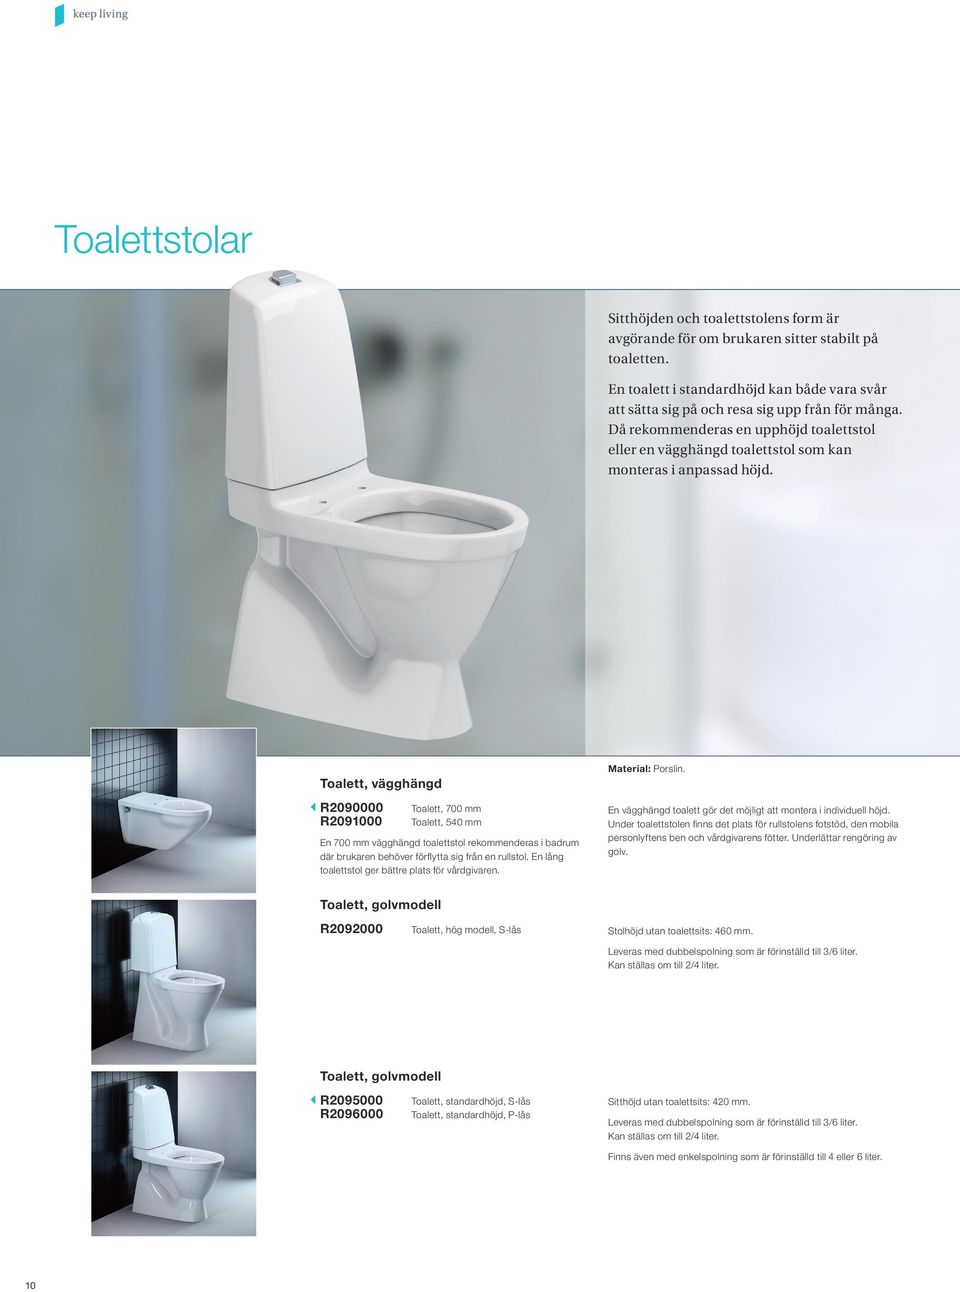 Toalett, vägghängd R2090000 R2091000 Toalett, 700 mm Toalett, 540 mm En 700 mm vägghängd toalettstol rekommenderas i badrum där brukaren behöver förflytta sig från en rullstol.